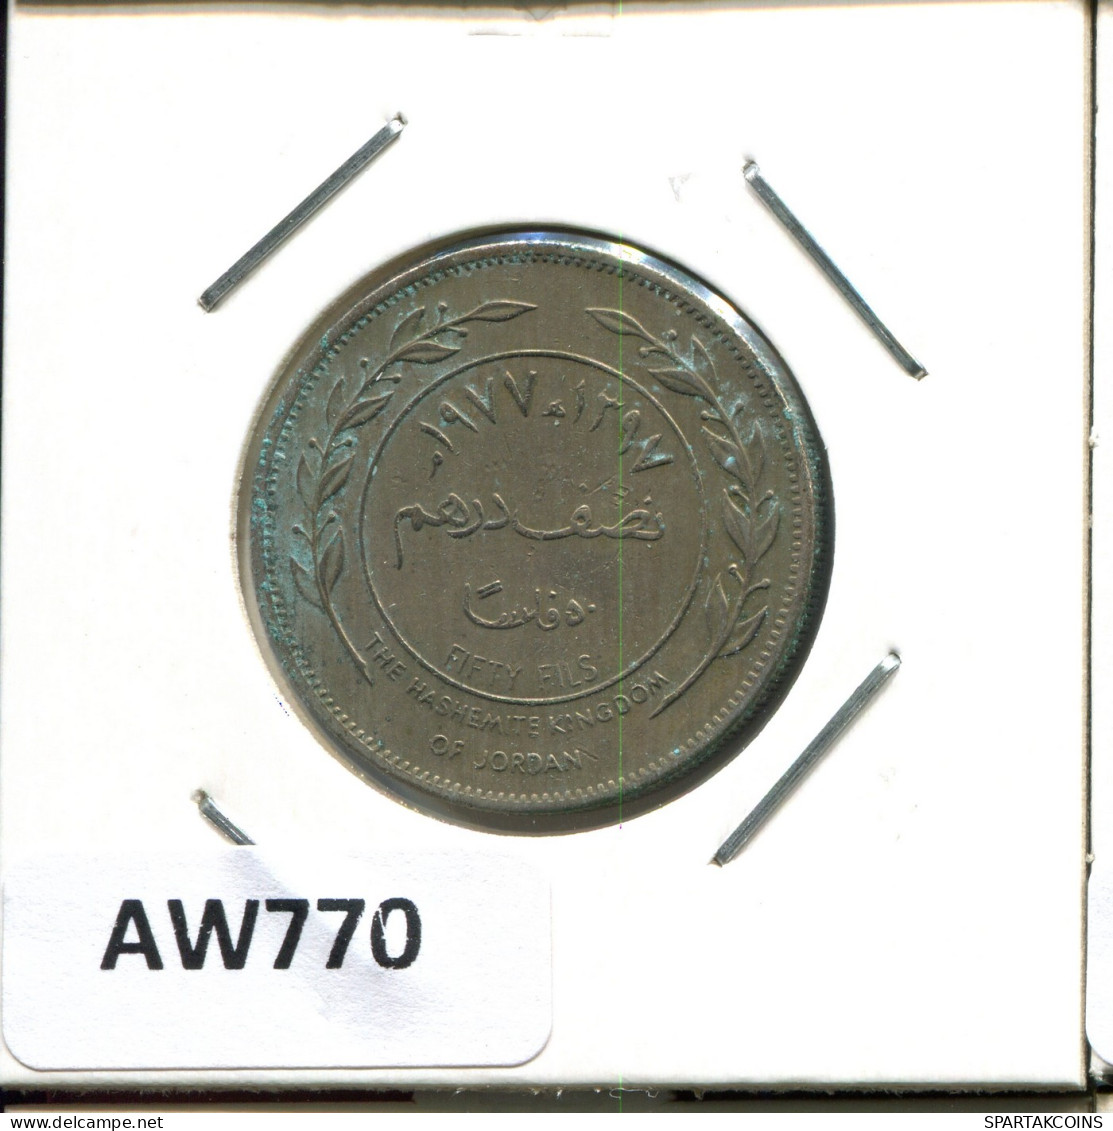 50 FILS 1977 JORDAN Islamic Coin #AW770.U - Jordanië